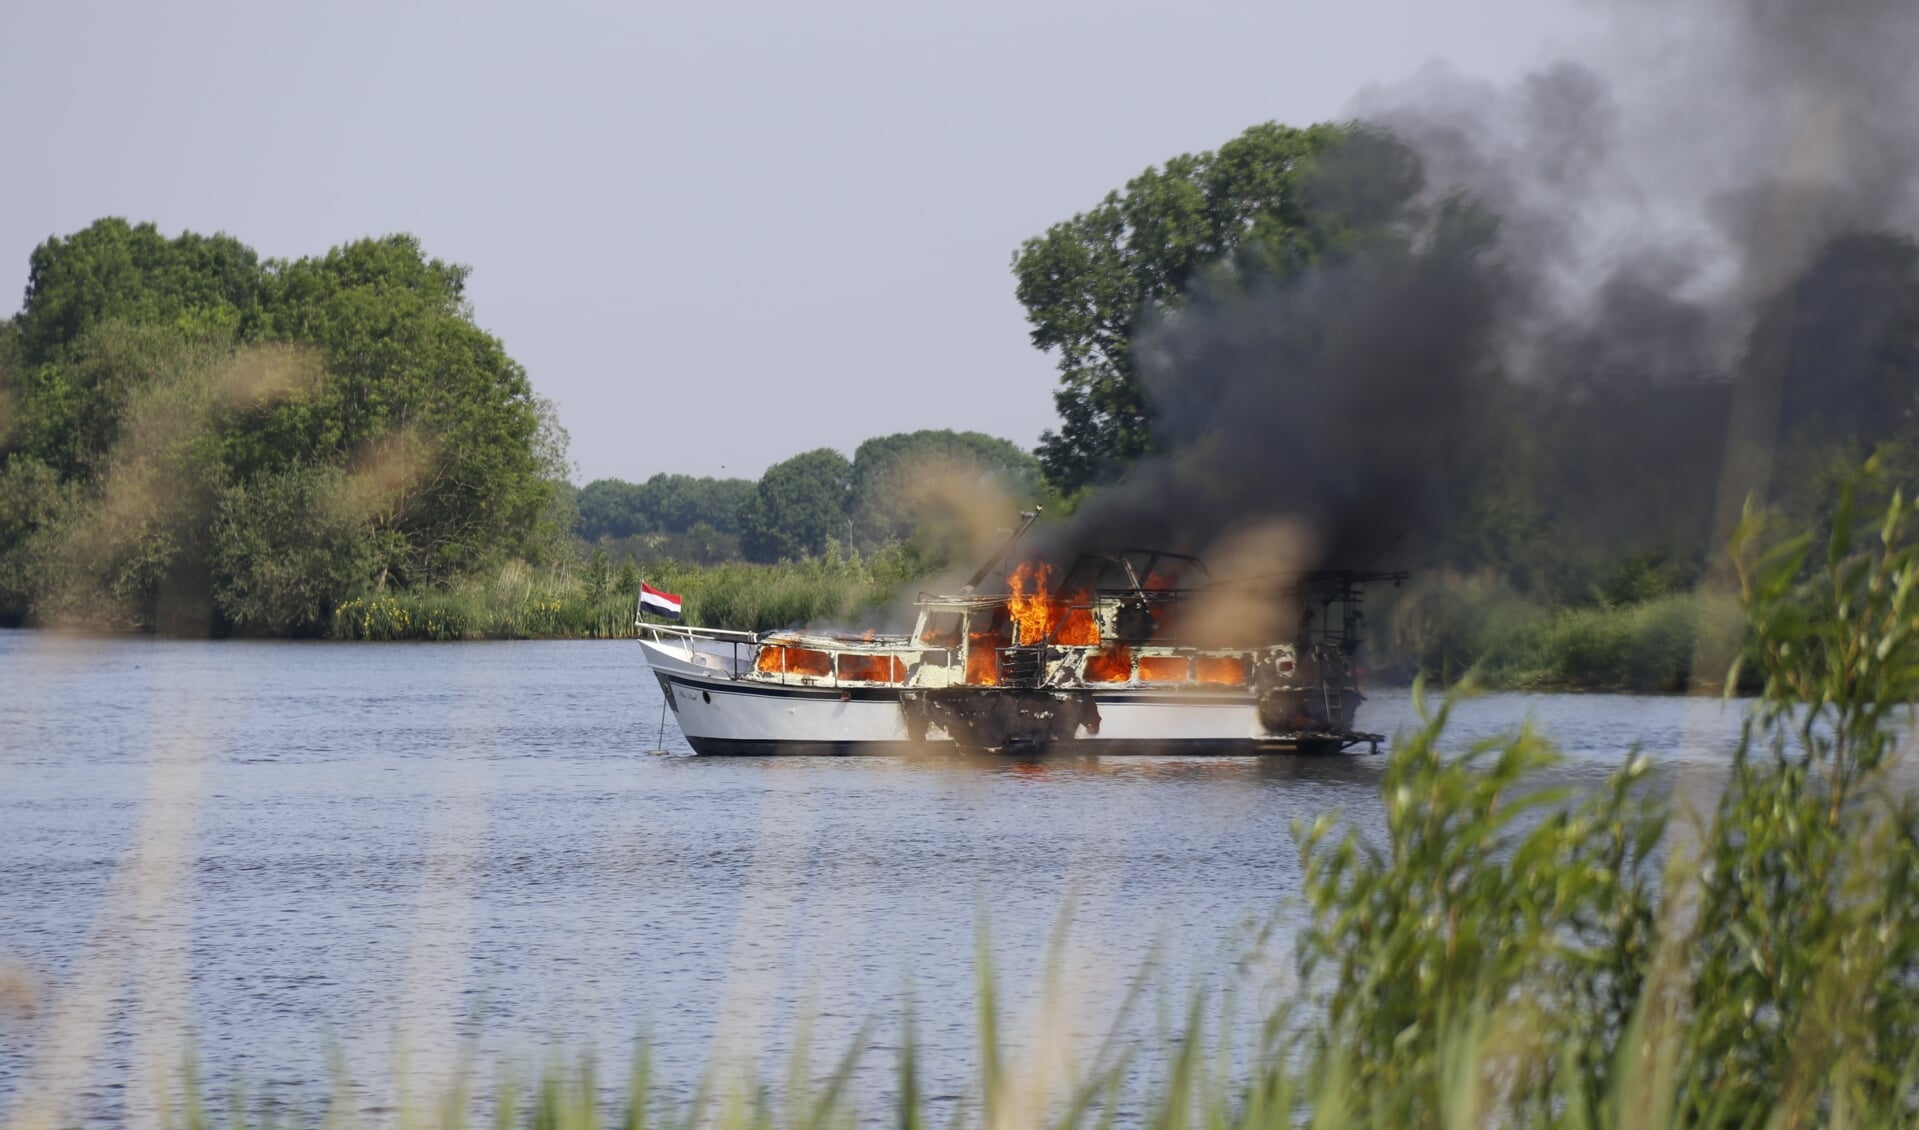 Speedboot op de Maas in brand.